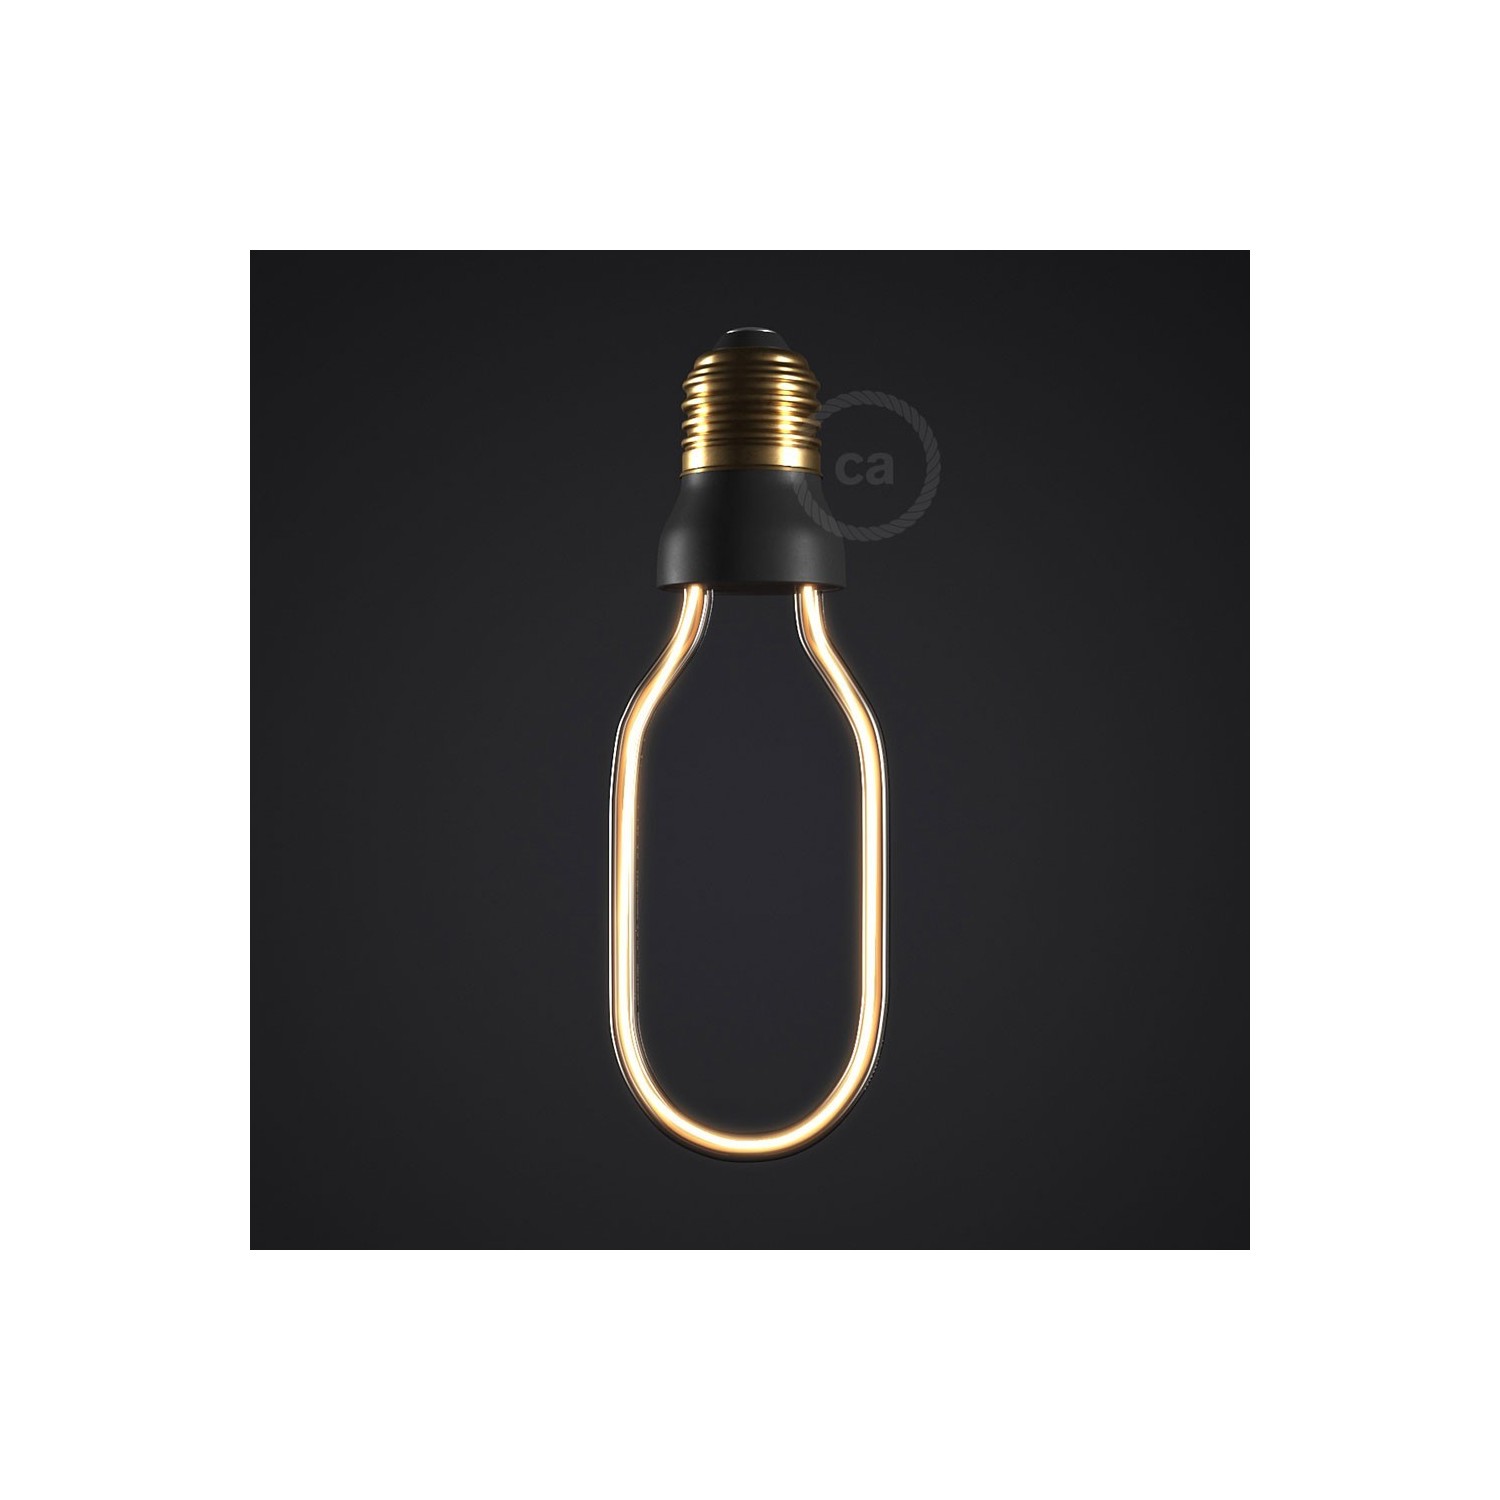 LED Art Tube Light Bulb 8W 300Lm E27 2200K Dimmable